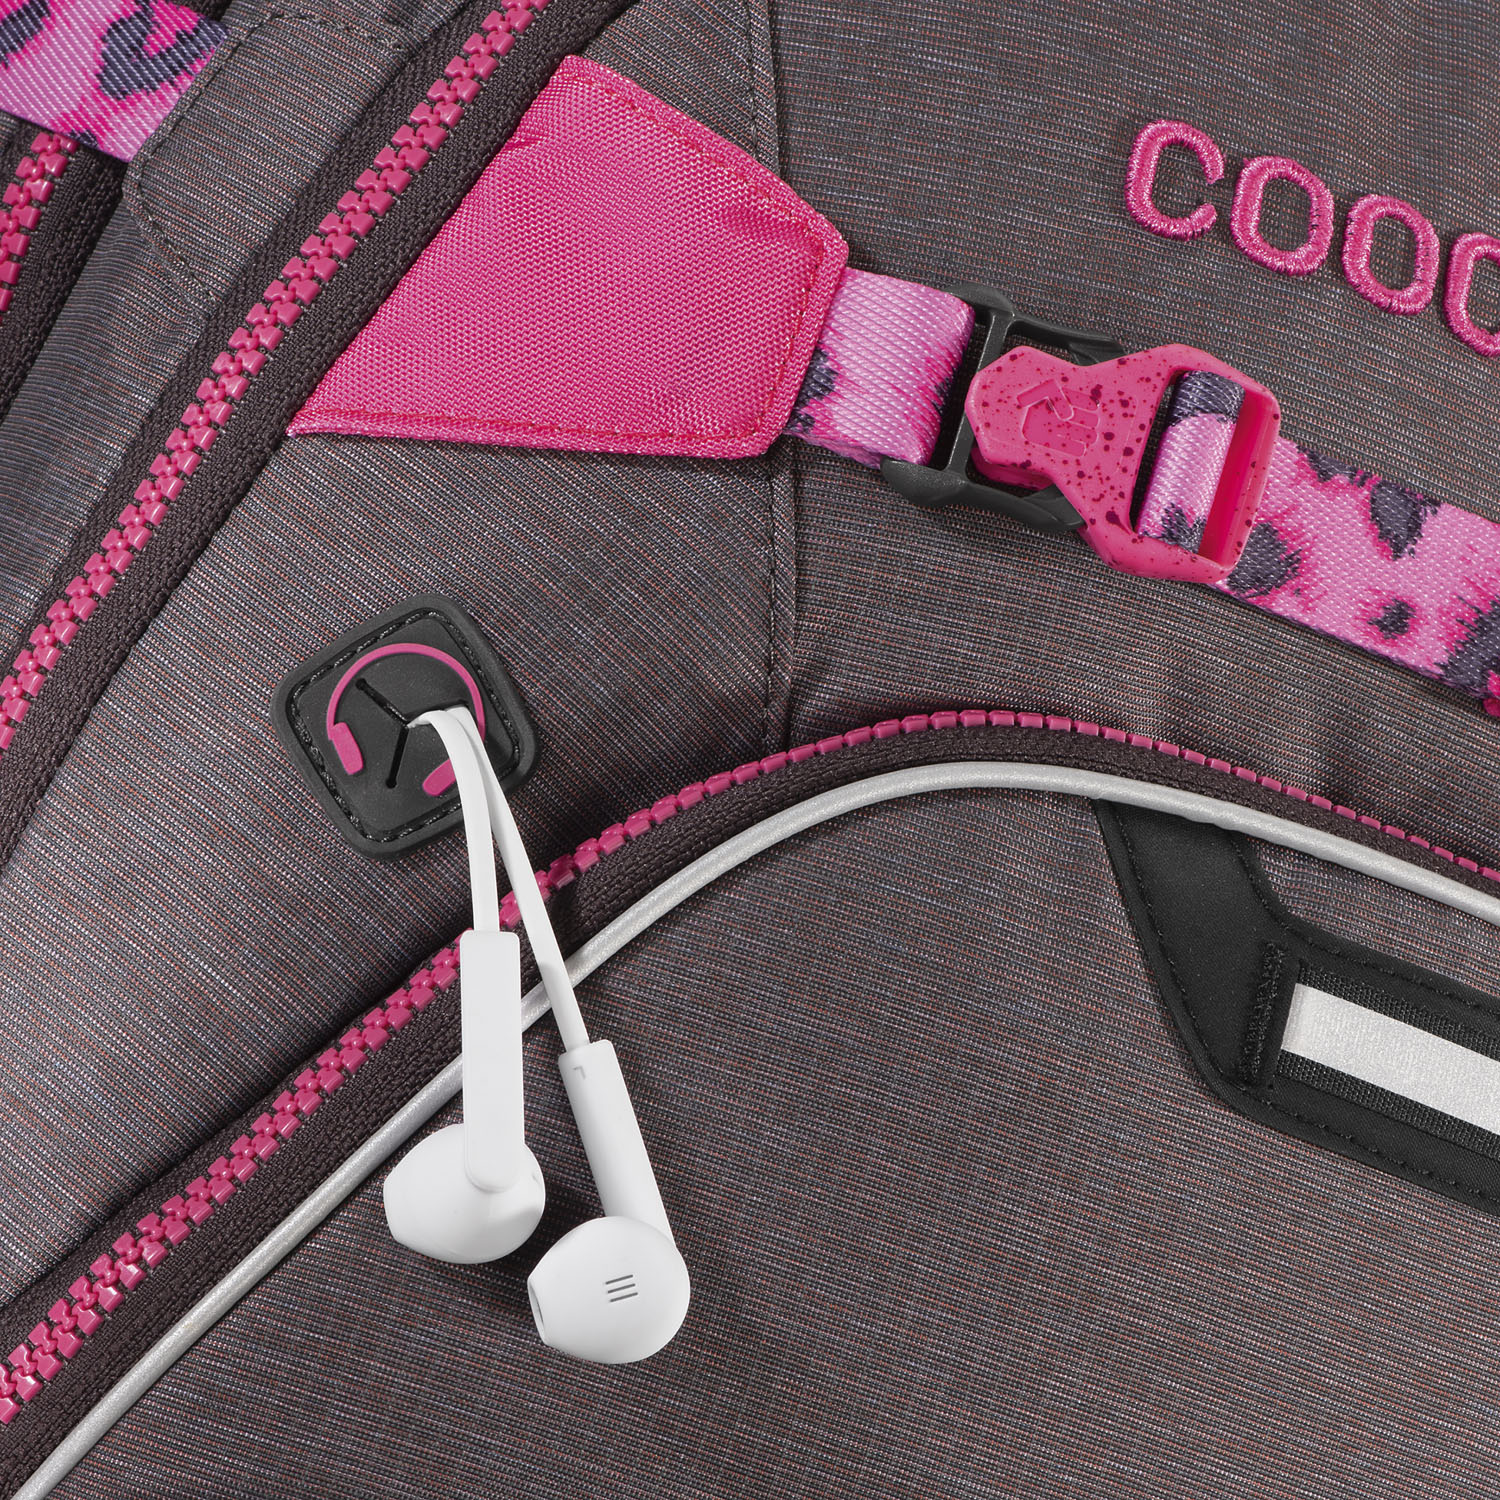 Coocazoo ScaleRale *Mixed Melange* Limited Edition Schulrucksack Pink Leo |  jetzt online kaufen auf Koffer.de ✓